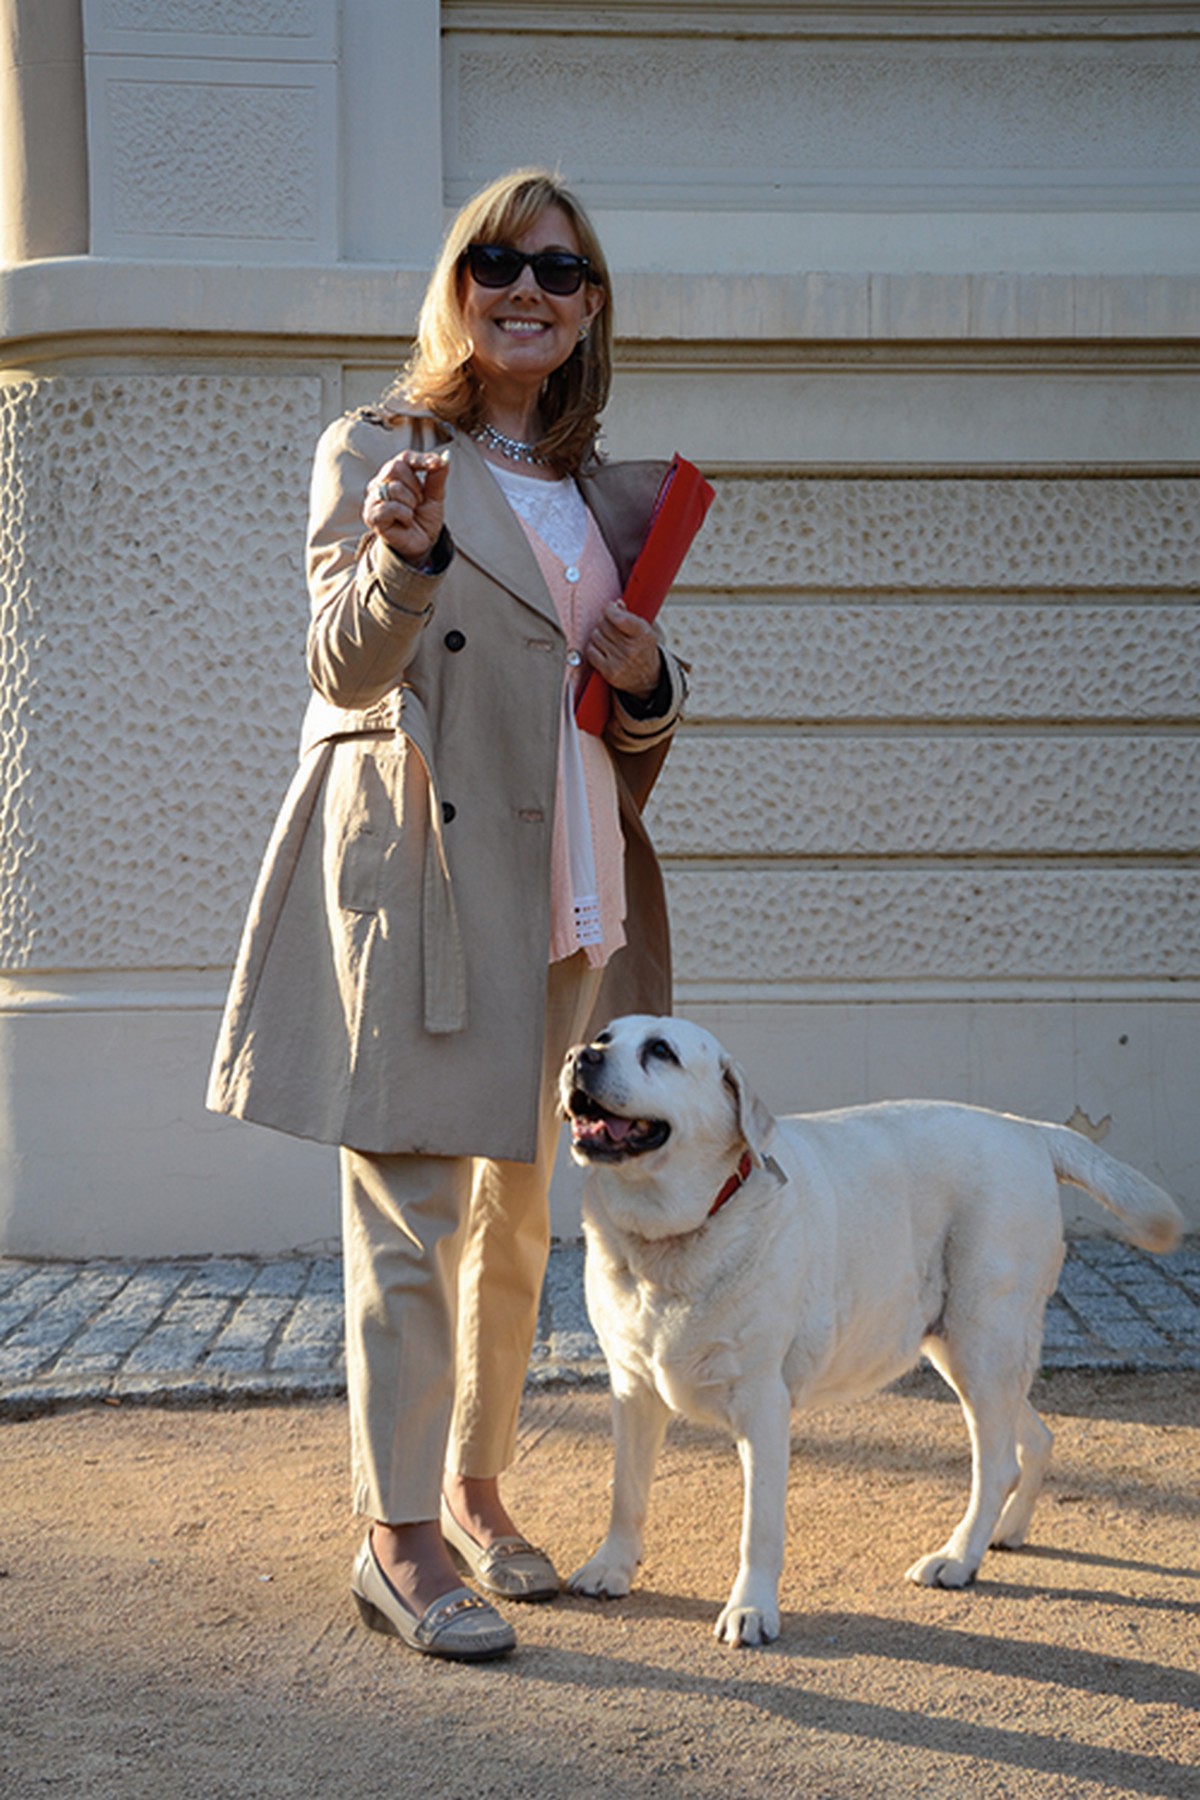 Sara Sandrino. De amos y perros. Projecte Objectiu Barcelona 2014